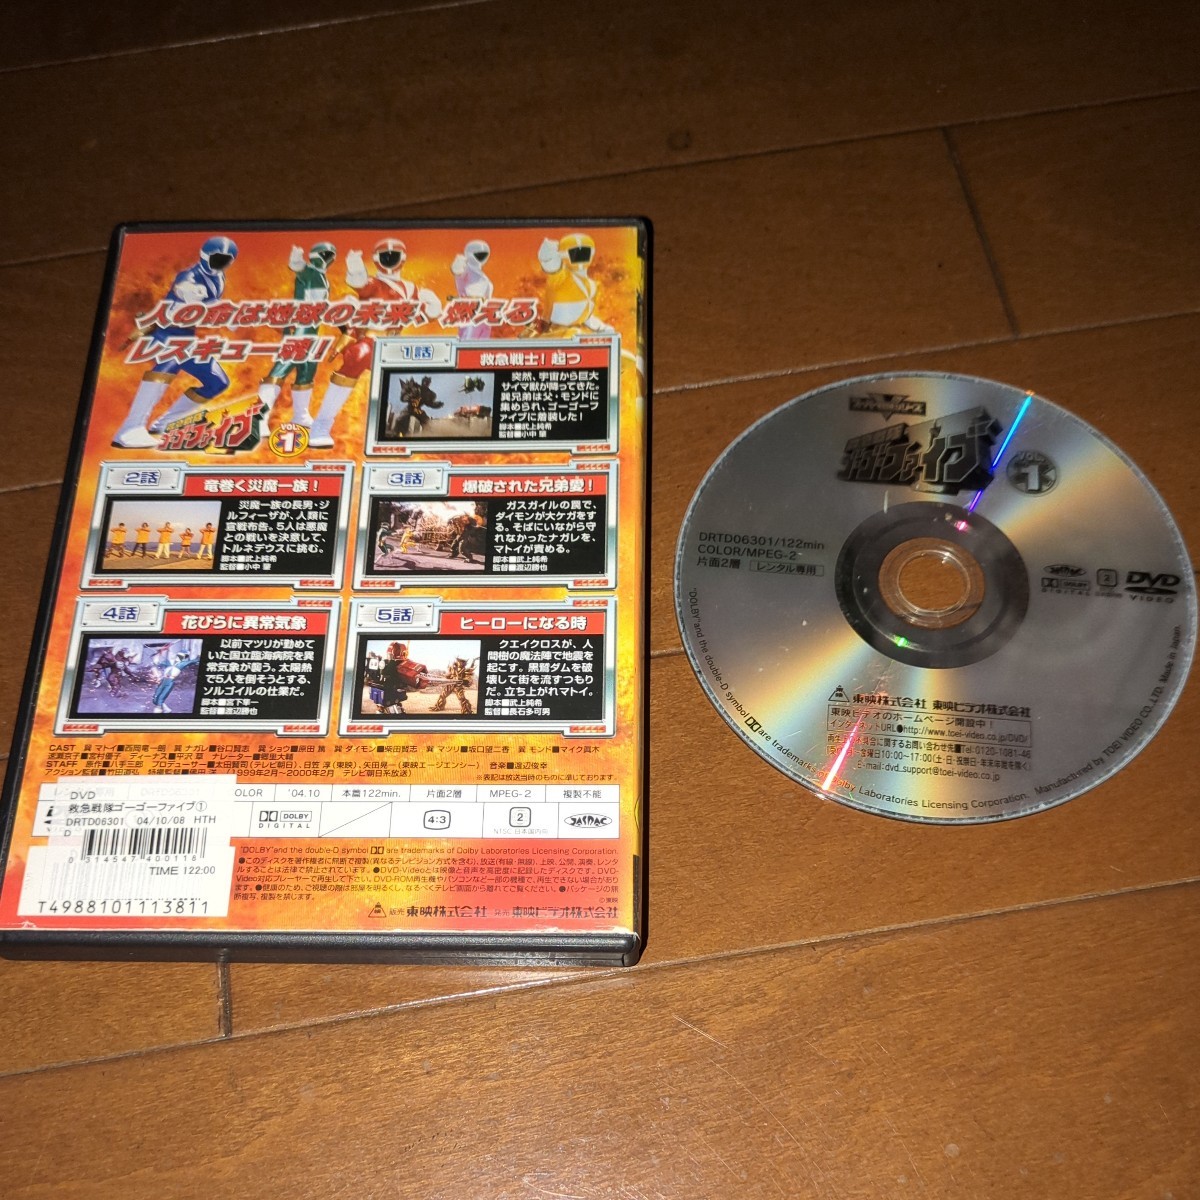 \' Kyukyu Sentai GoGo-V DVD, all 9 volume \'